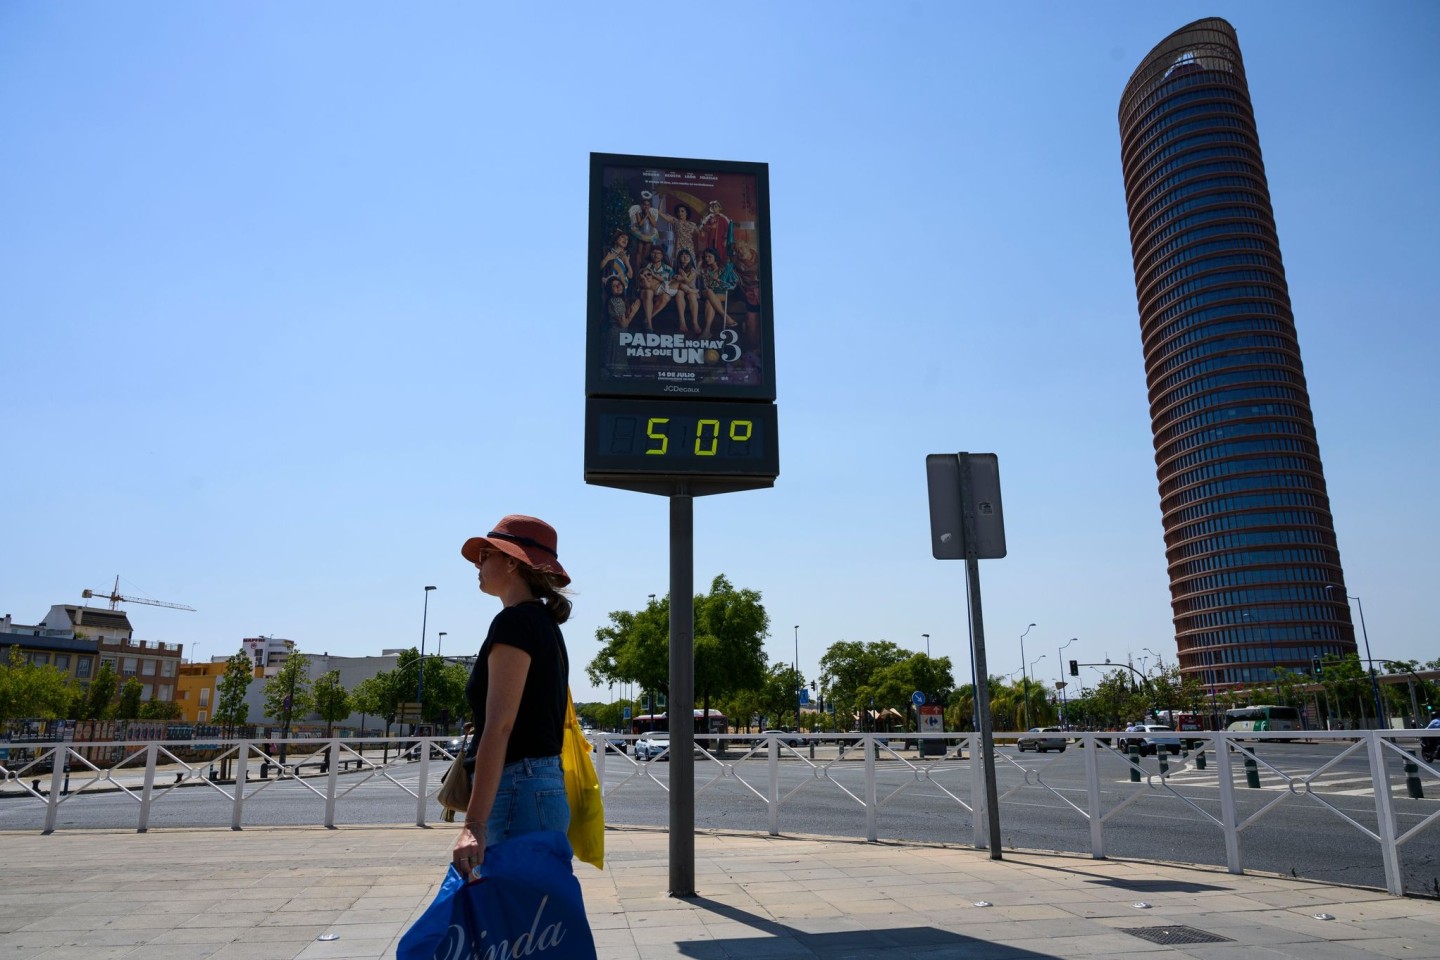 Ein öffentliches Thermometer zeigt in Sevilla eine Temperatur von 50 Grad an. Die derzeitige Gluthitze-Periode in Spanien soll mindestens bis zum kommenden Dienstag anhalten.